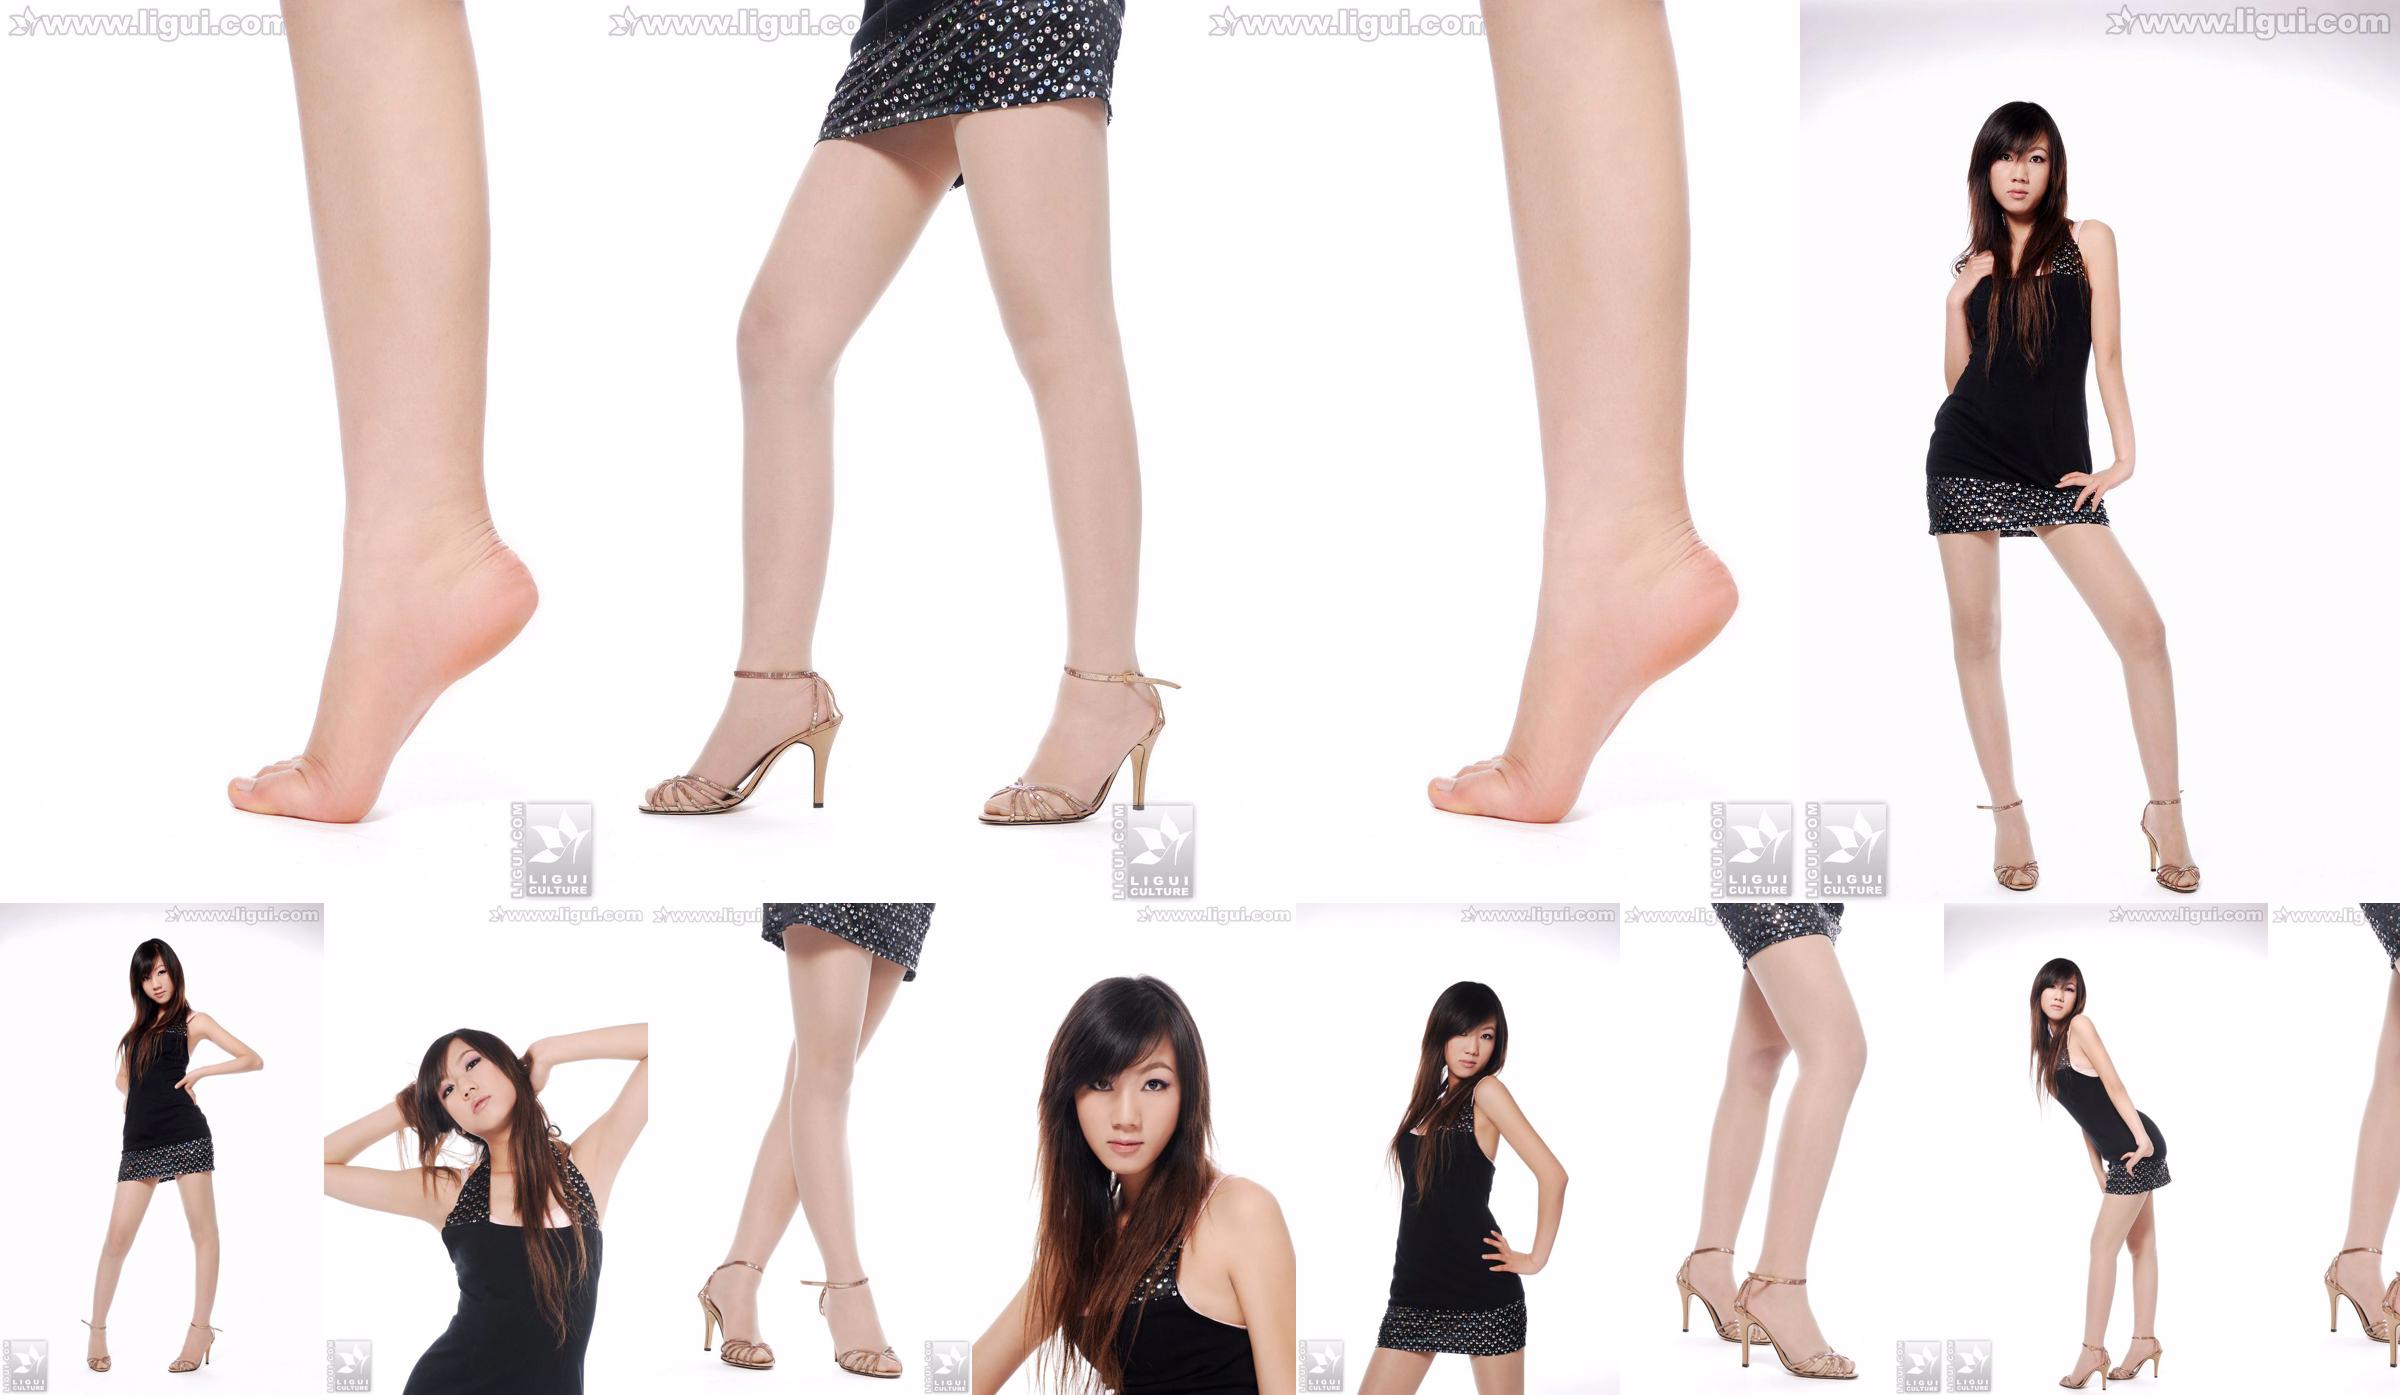 Modell Sheng Chao "Hochhackiger Jadefuß Schöne Neue Show" [Sheng LiGui] Foto von schönen Beinen und Jadefuß No.61e43b Seite 1